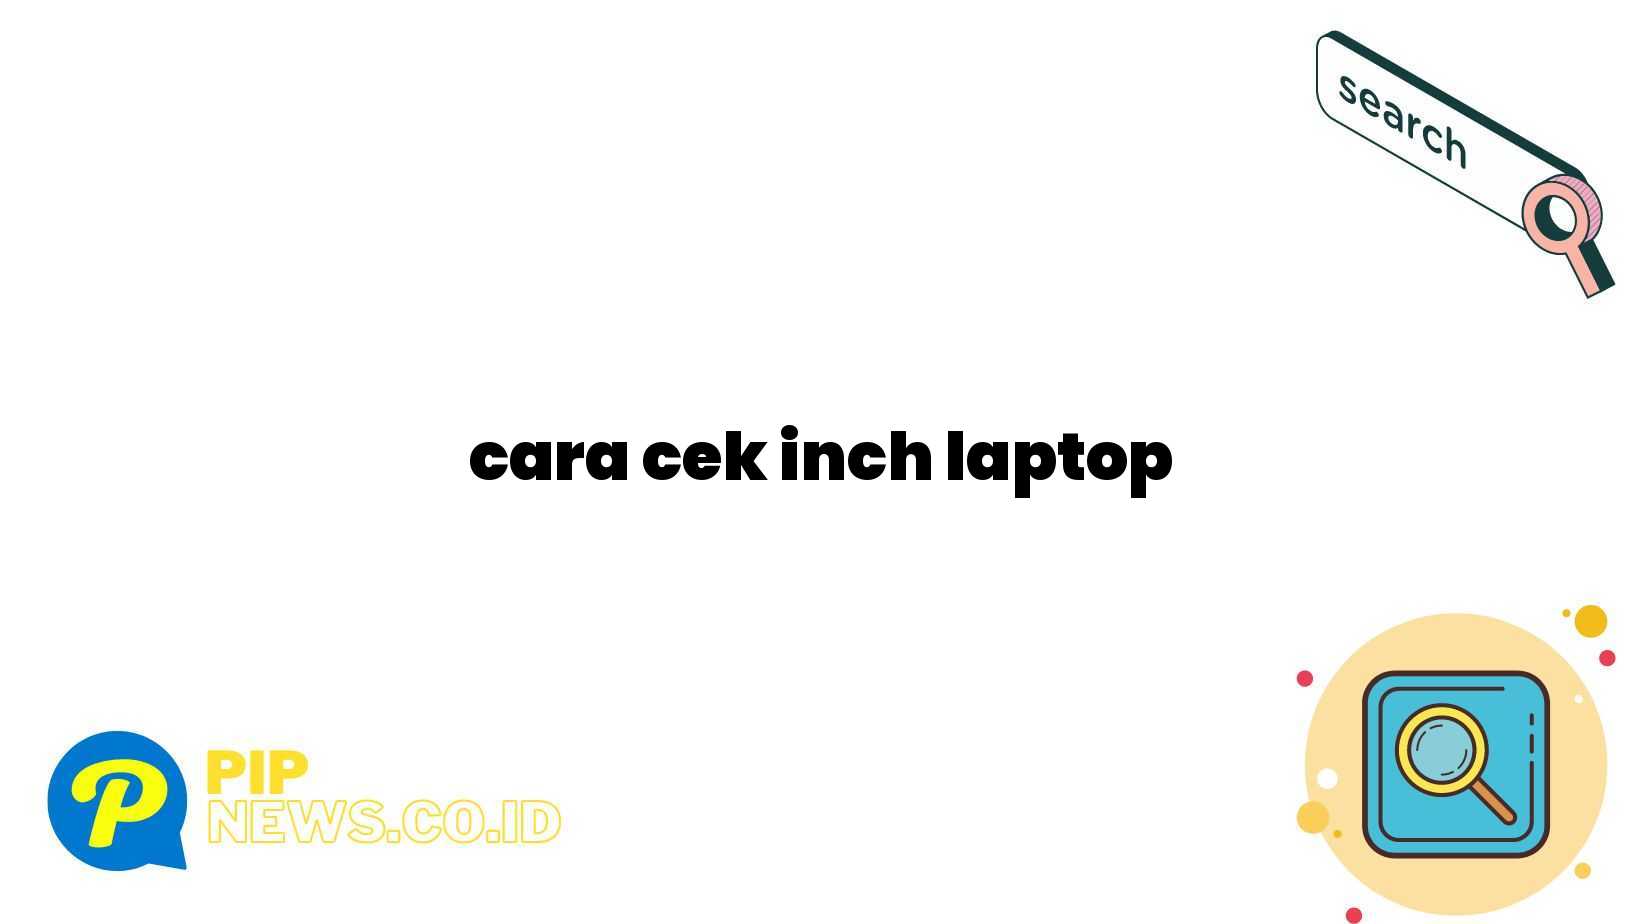 cara cek inch laptop